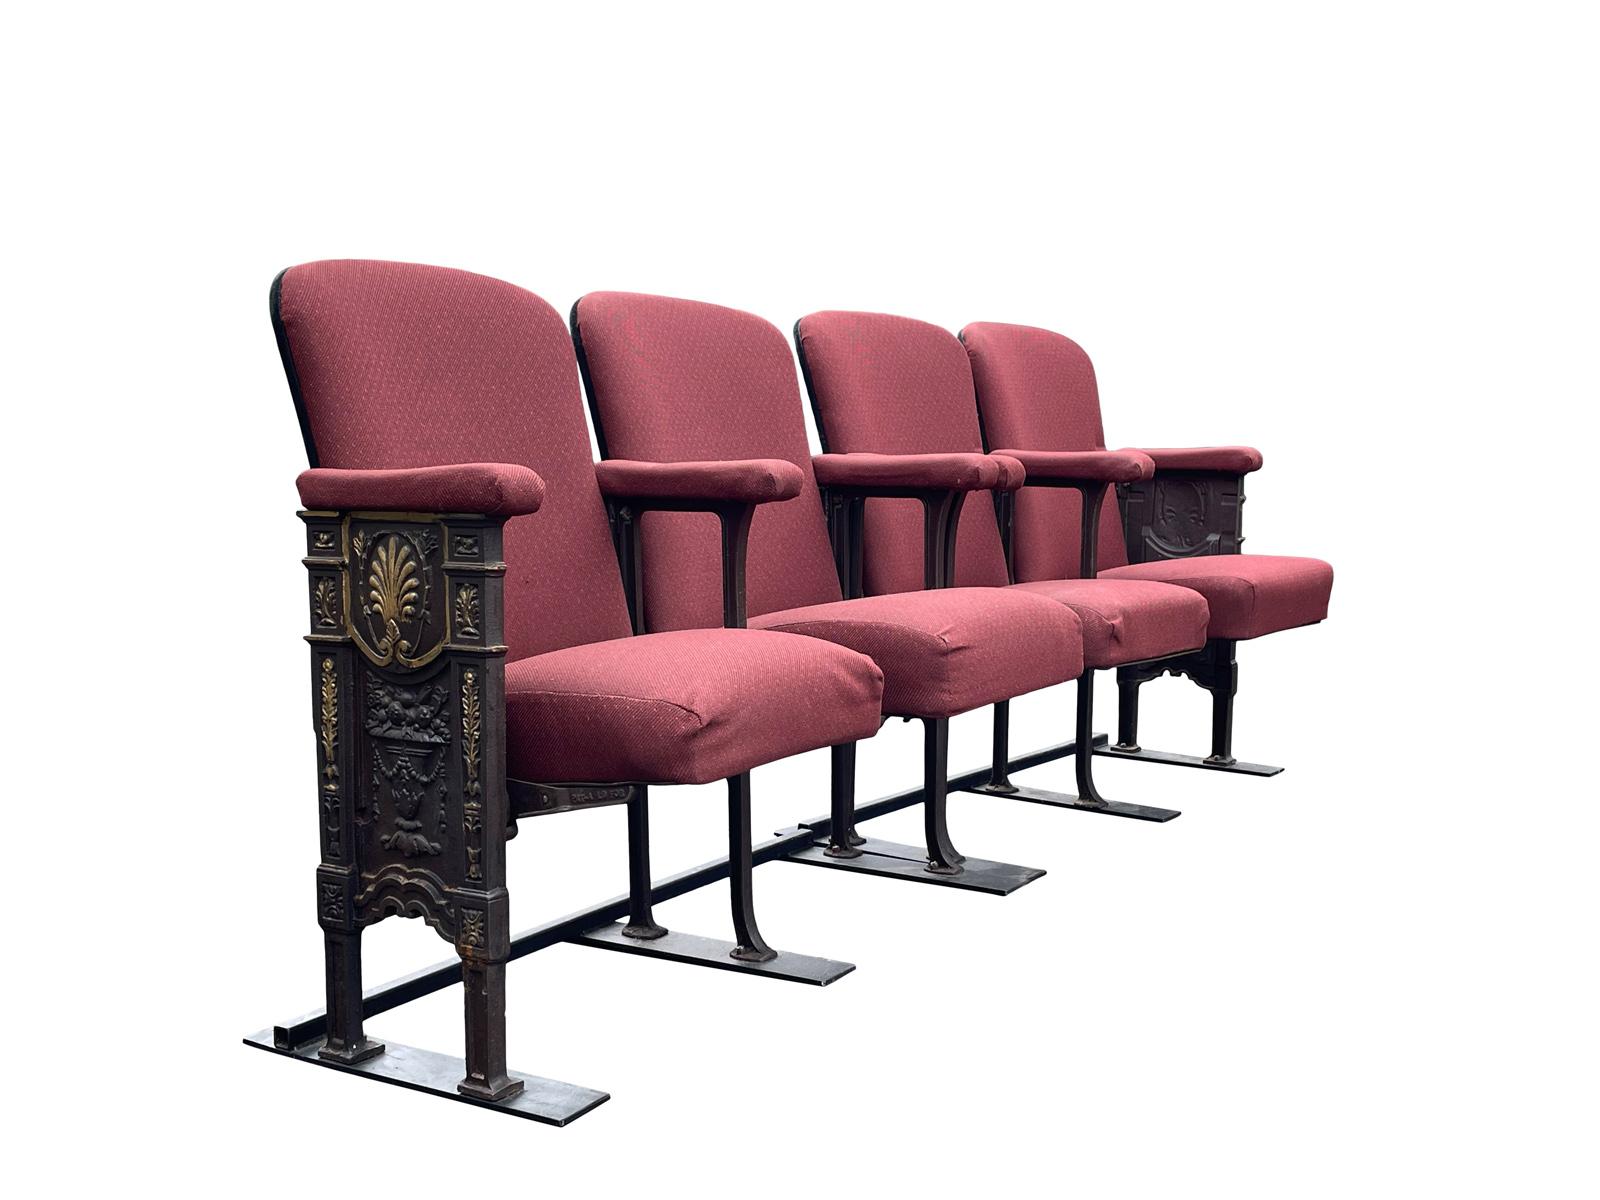 Il s'agit de sièges art déco originaux des années 1920, provenant de Studio54 Newyork, dont la tapisserie d'origine en forme de guépard se trouve sous les sièges existants. Il y a une lettre de la providence, indiquant leur provenance il y a 4